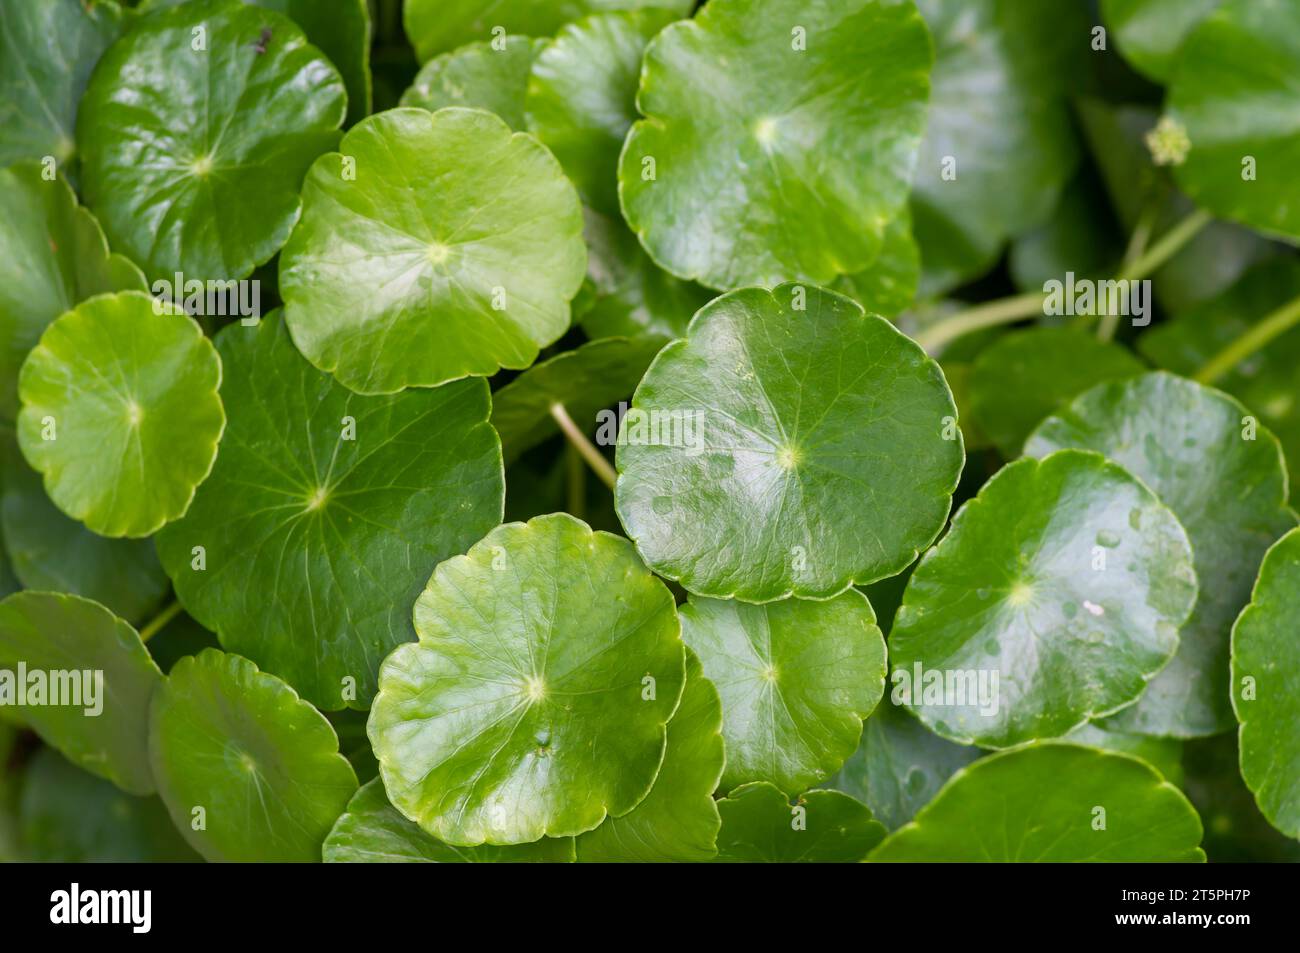 Close up of Daun Pegagan, Centella asiatica leaves, in shallow focus. Stock Photo